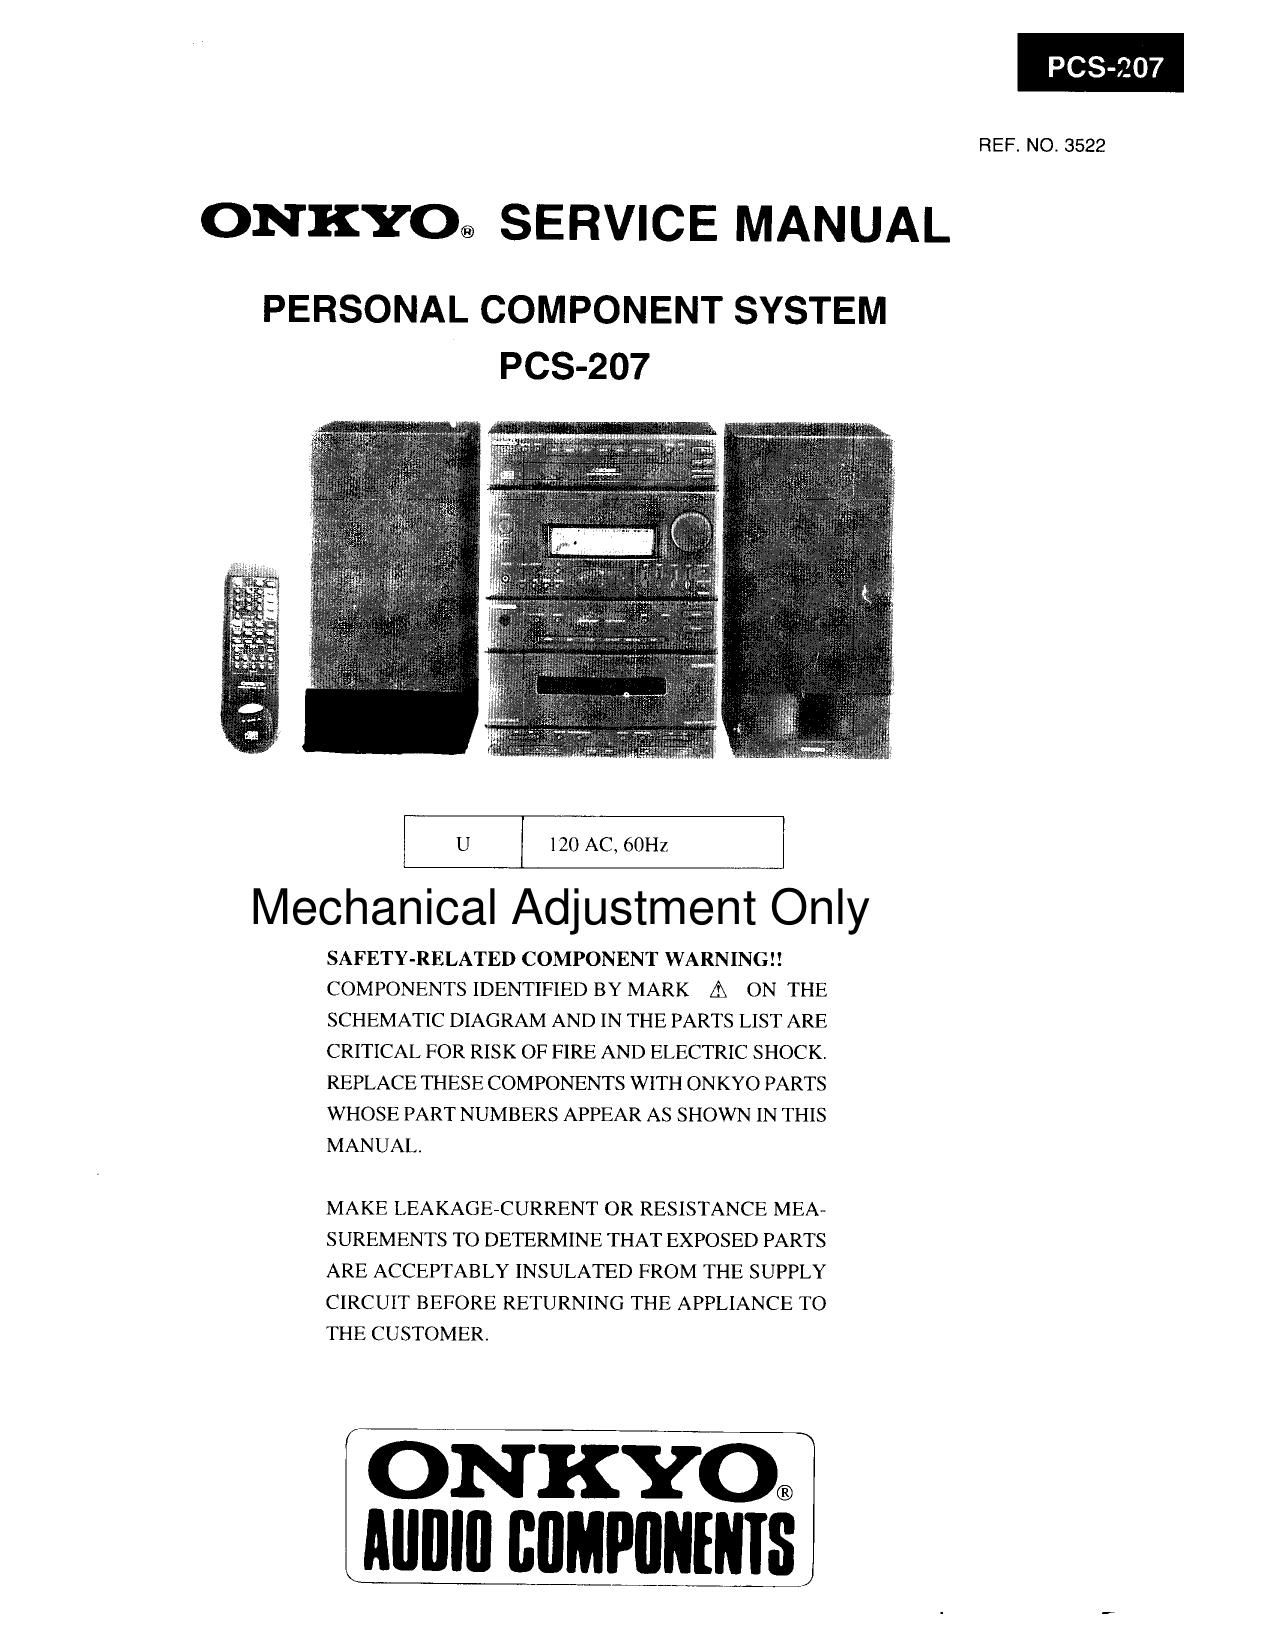 Onkyo PSC 207 Service Manual